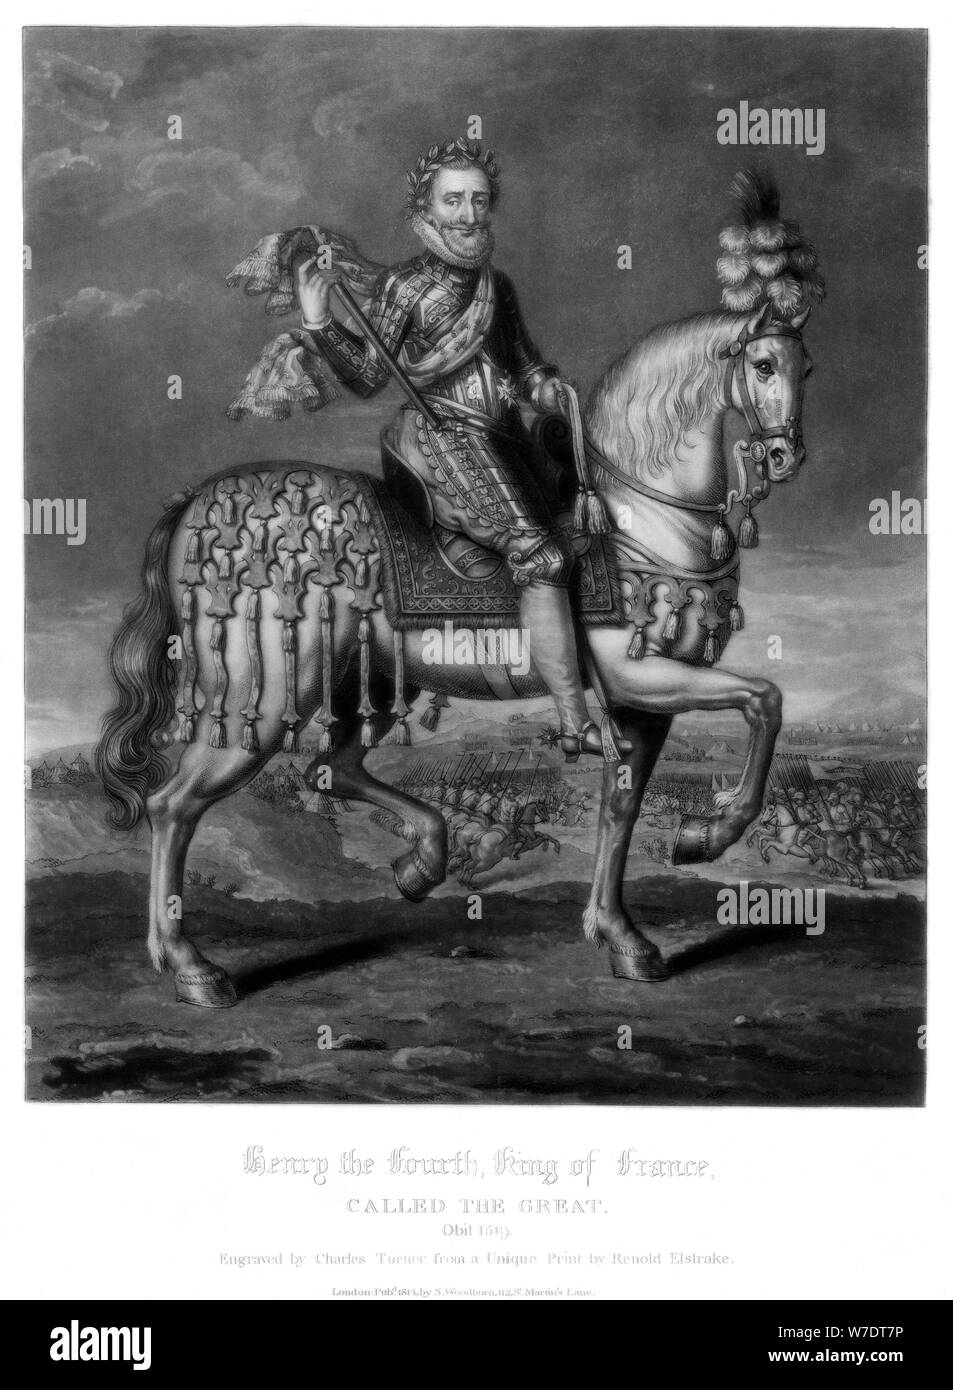 Henry IV, King of France, (1816).Artist: Charles Turner Stock Photo